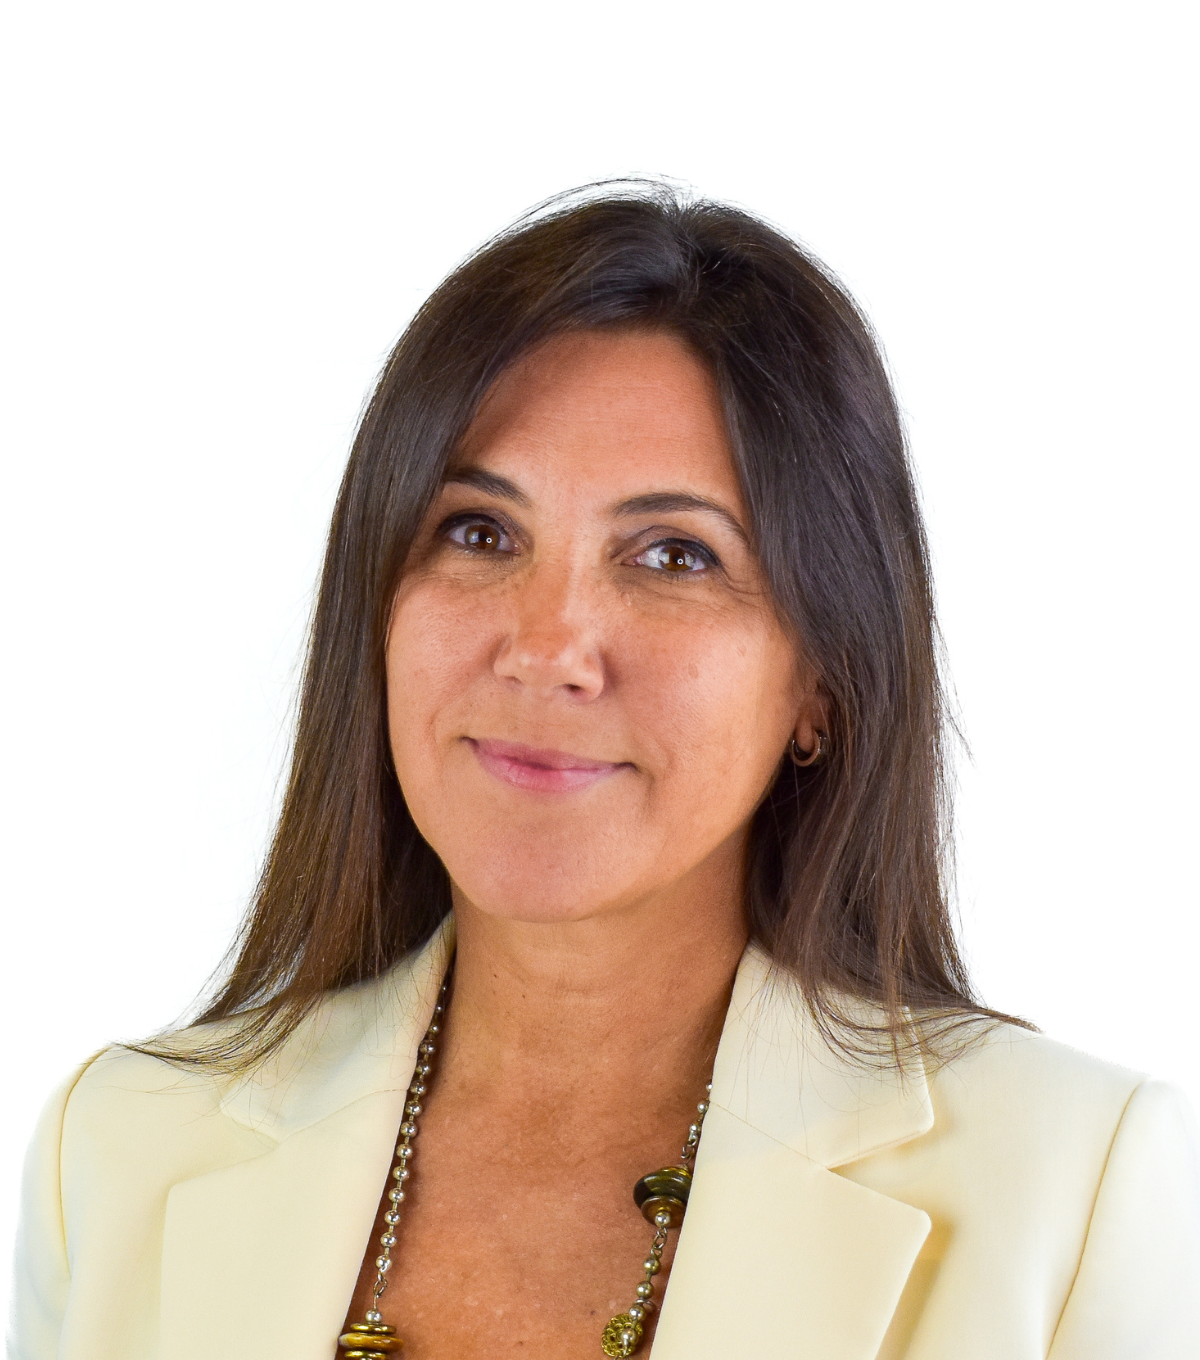 Dr Carmen Torre, Consultant Plastics, Reconstructive & Aesthetic Surgeon